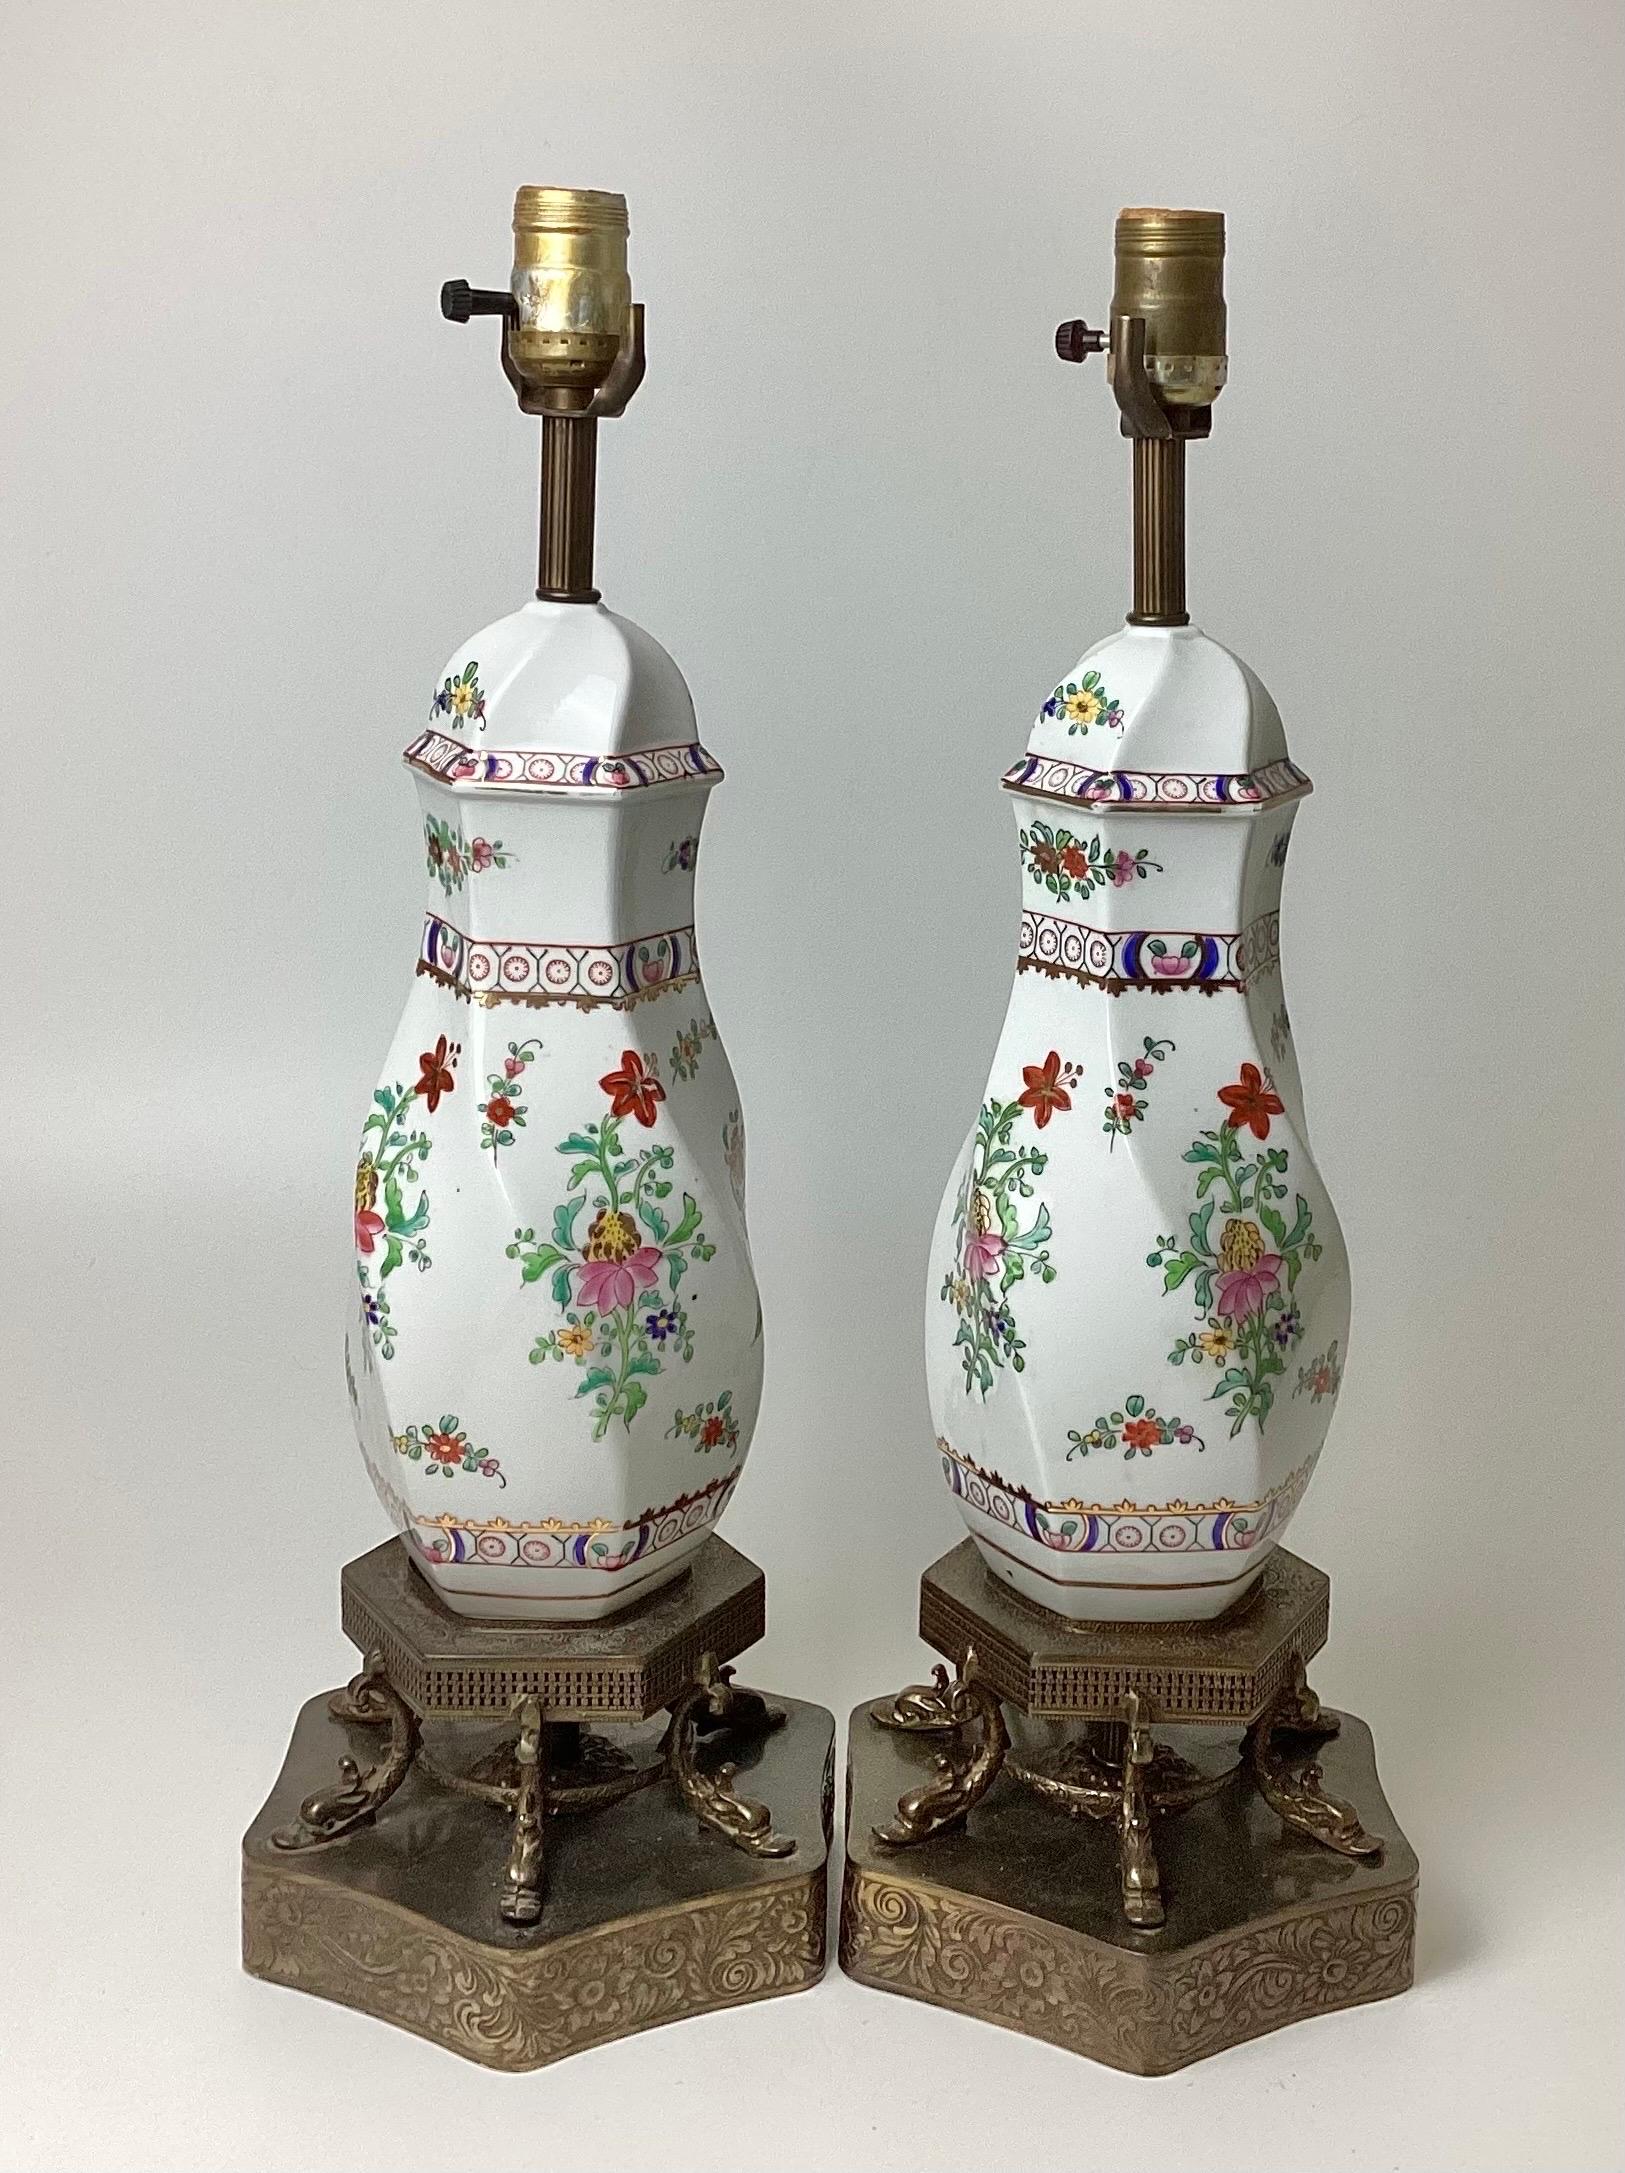 Paire de lampes en porcelaine peinte à la main, blanches avec des fleurs, sur des bases de dauphin en laiton filigrané. Stand 21